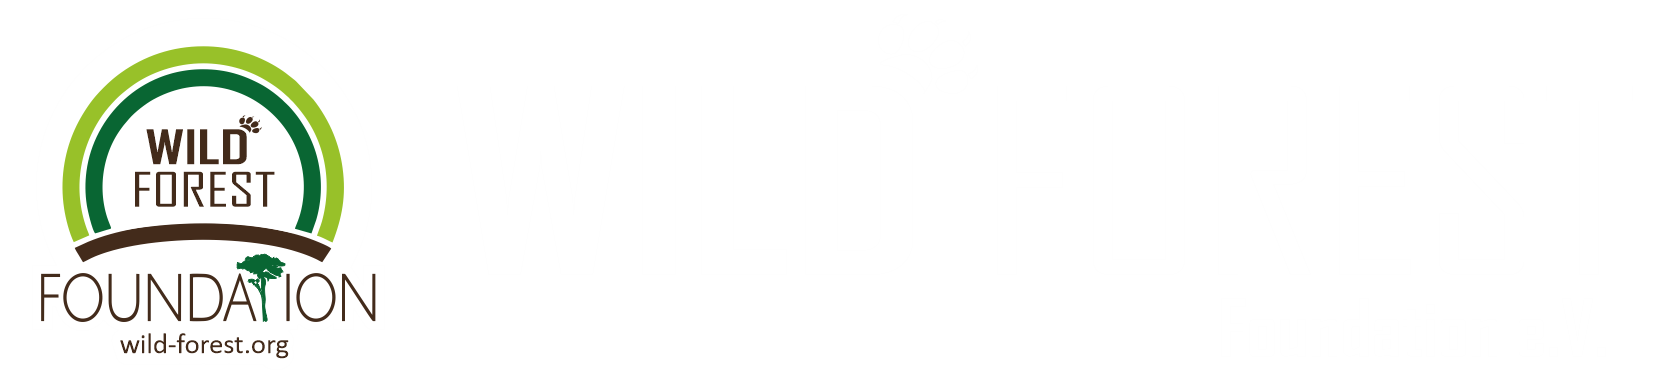 Wild Forest Foundation e.V.